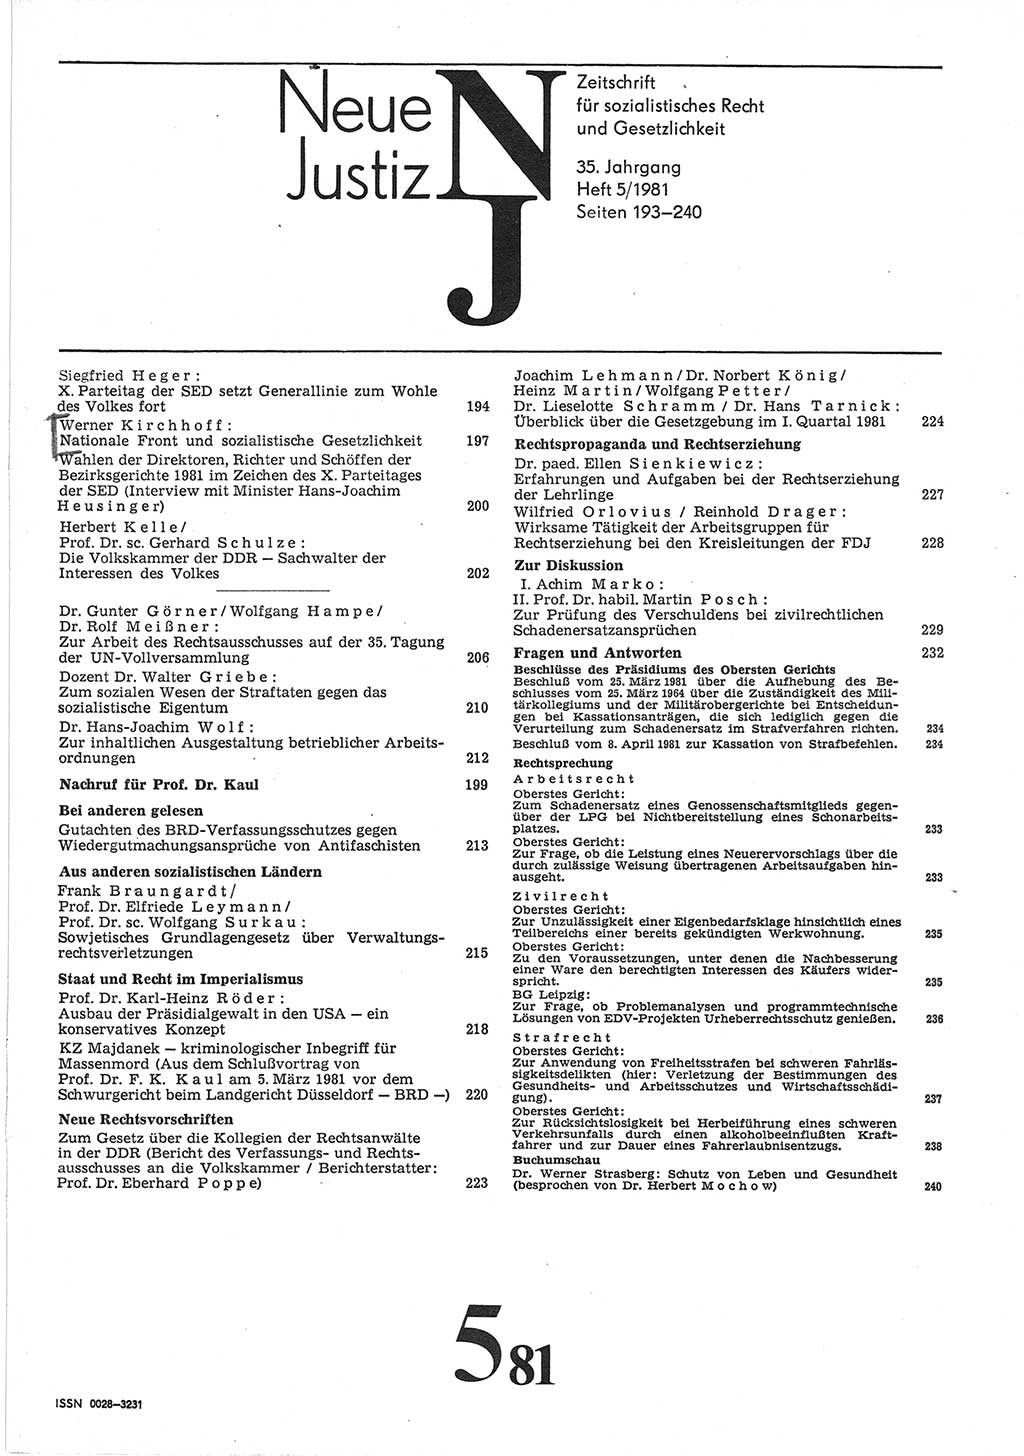 Neue Justiz (NJ), Zeitschrift für sozialistisches Recht und Gesetzlichkeit [Deutsche Demokratische Republik (DDR)], 35. Jahrgang 1981, Seite 193 (NJ DDR 1981, S. 193)